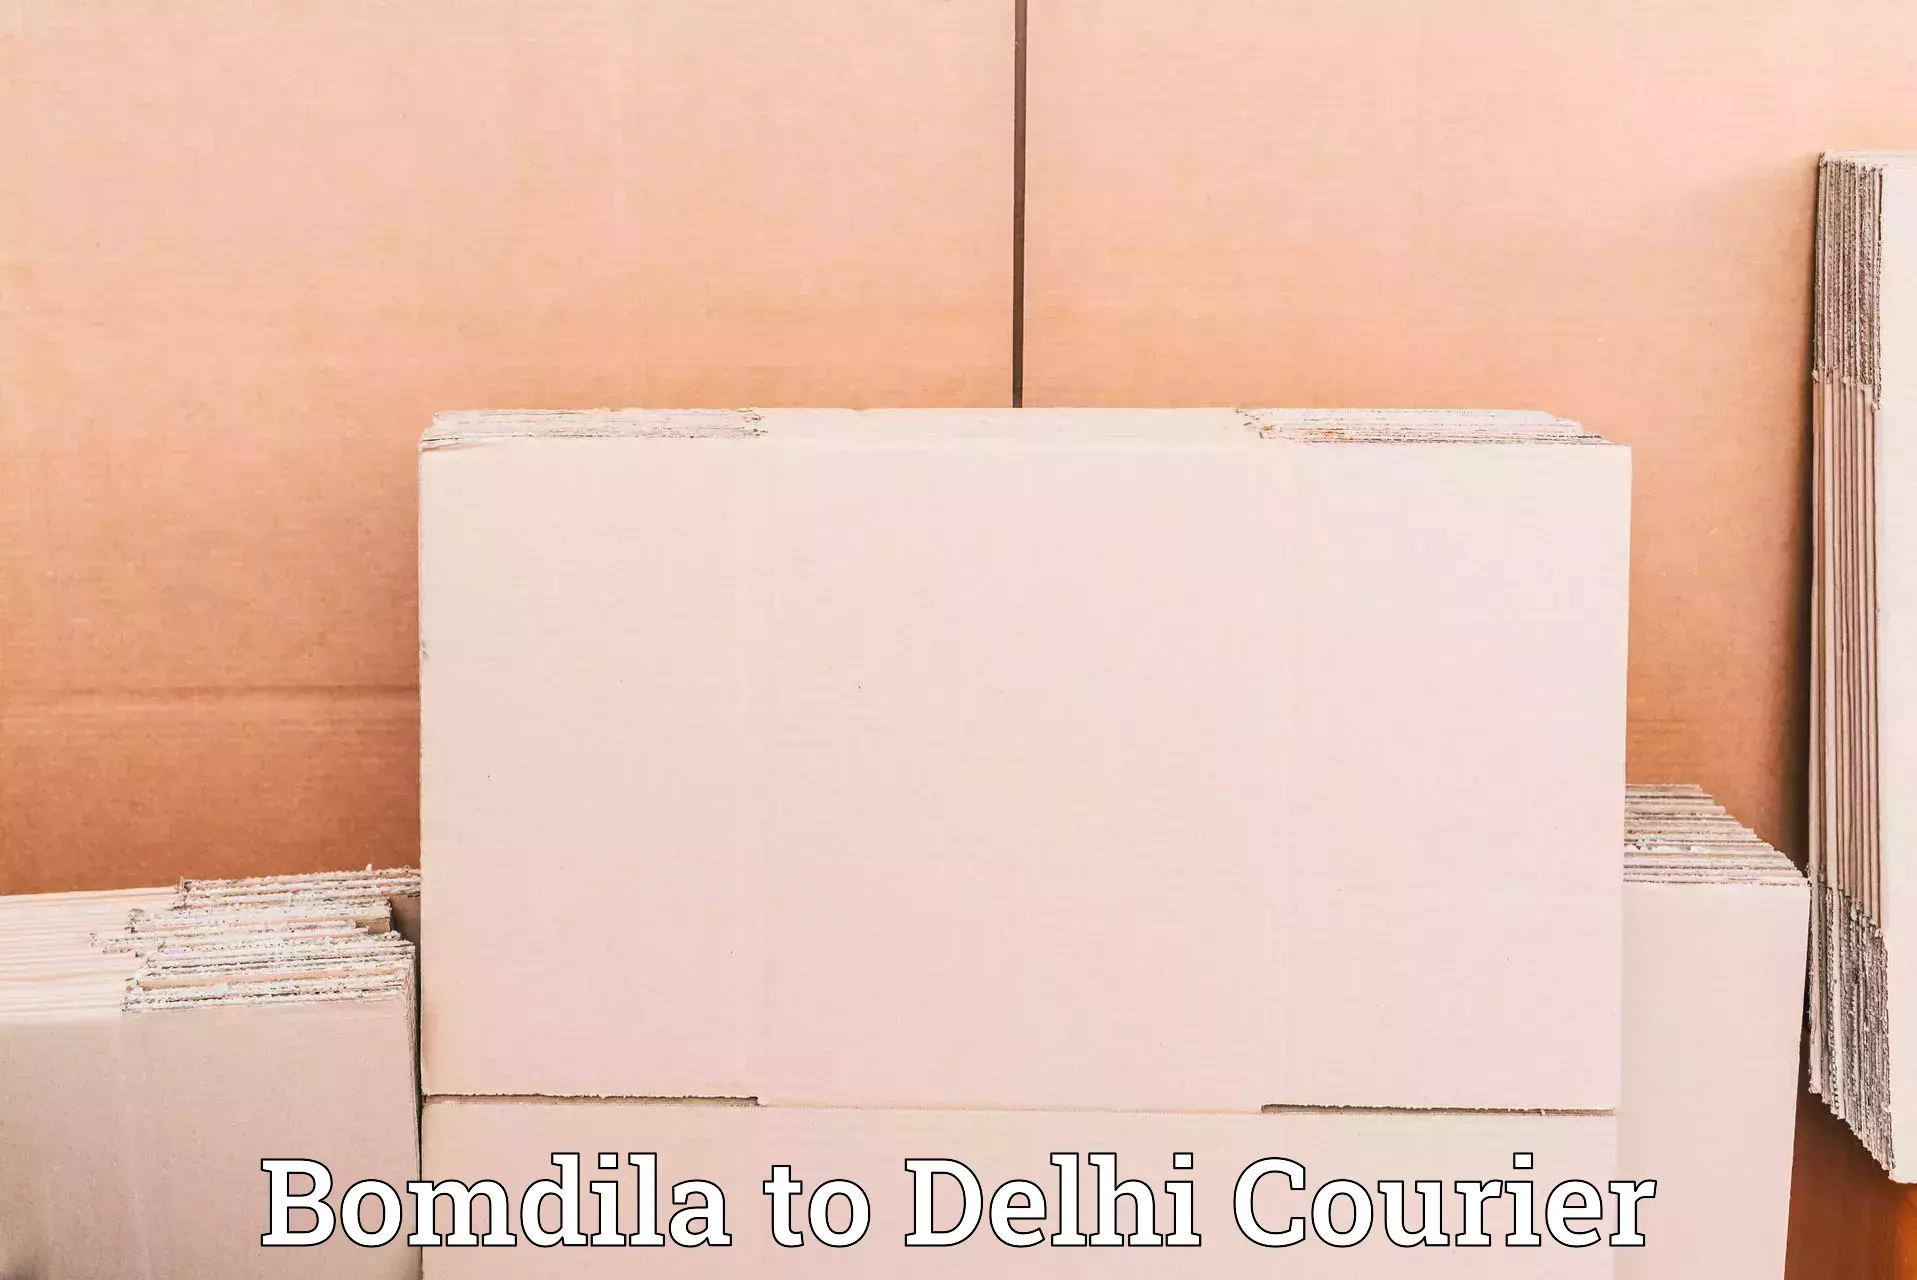 Reliable courier service Bomdila to Ramesh Nagar